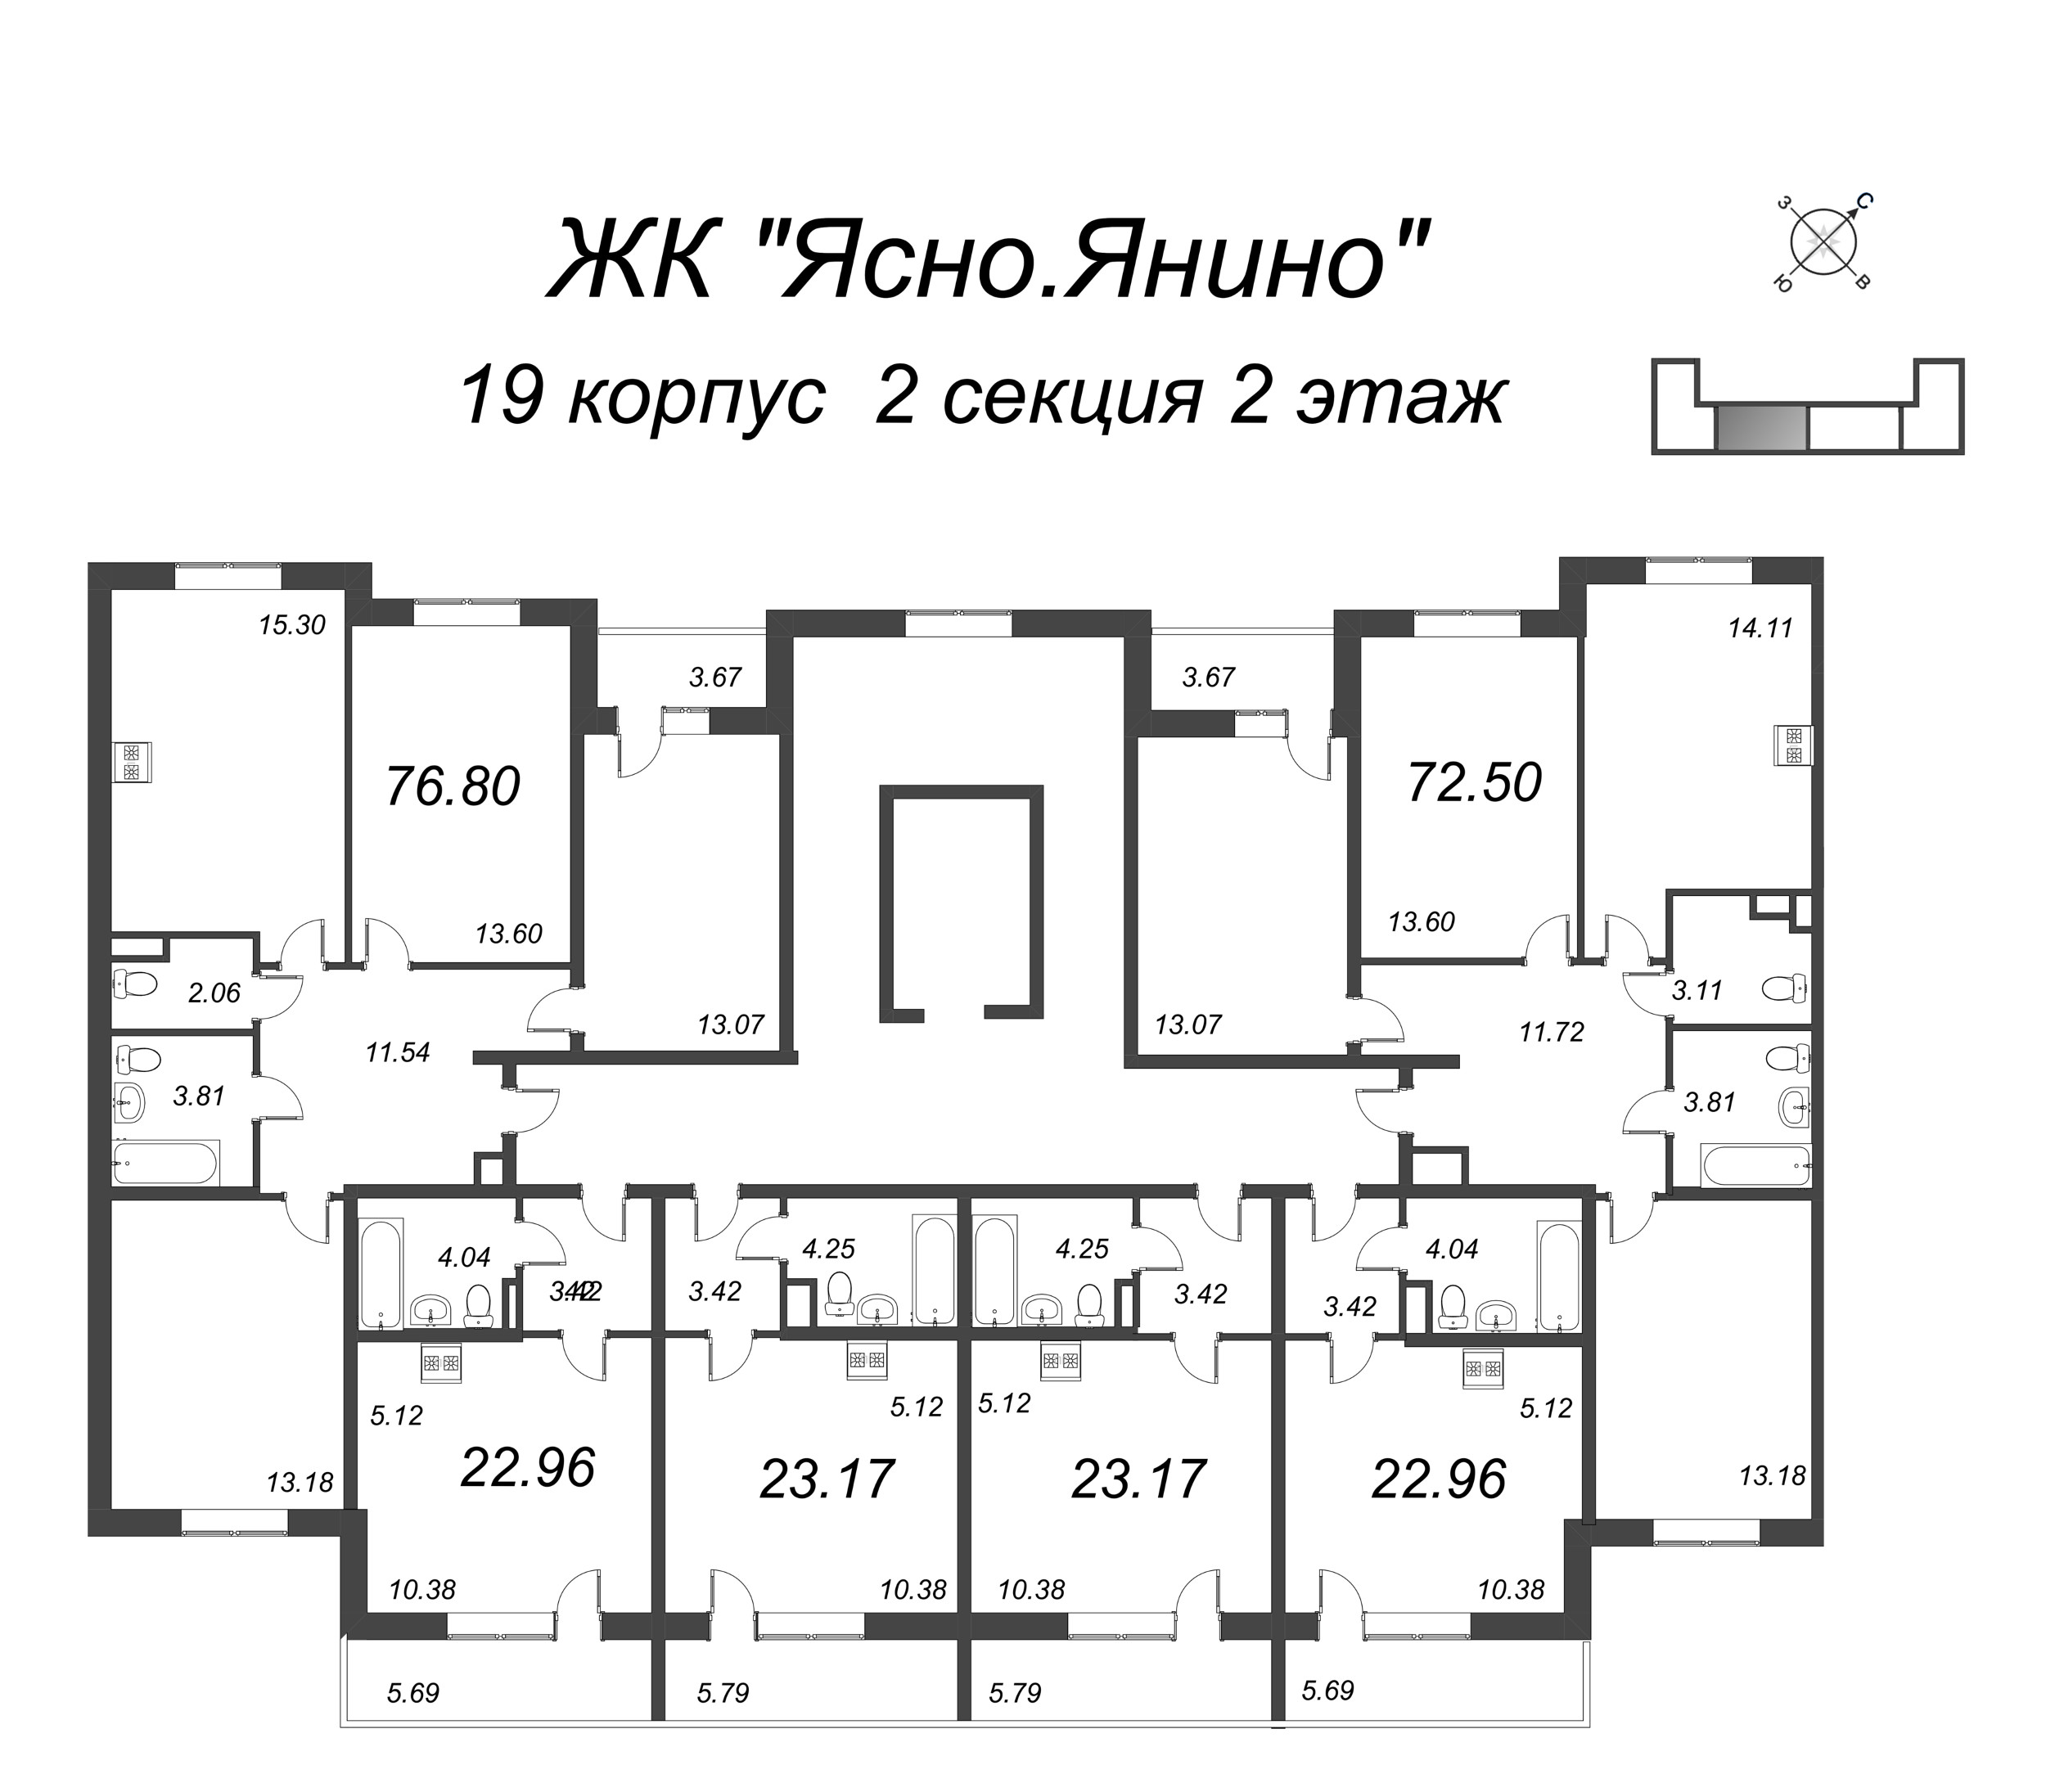 Квартира-студия, 22.96 м² в ЖК "Ясно.Янино" - планировка этажа